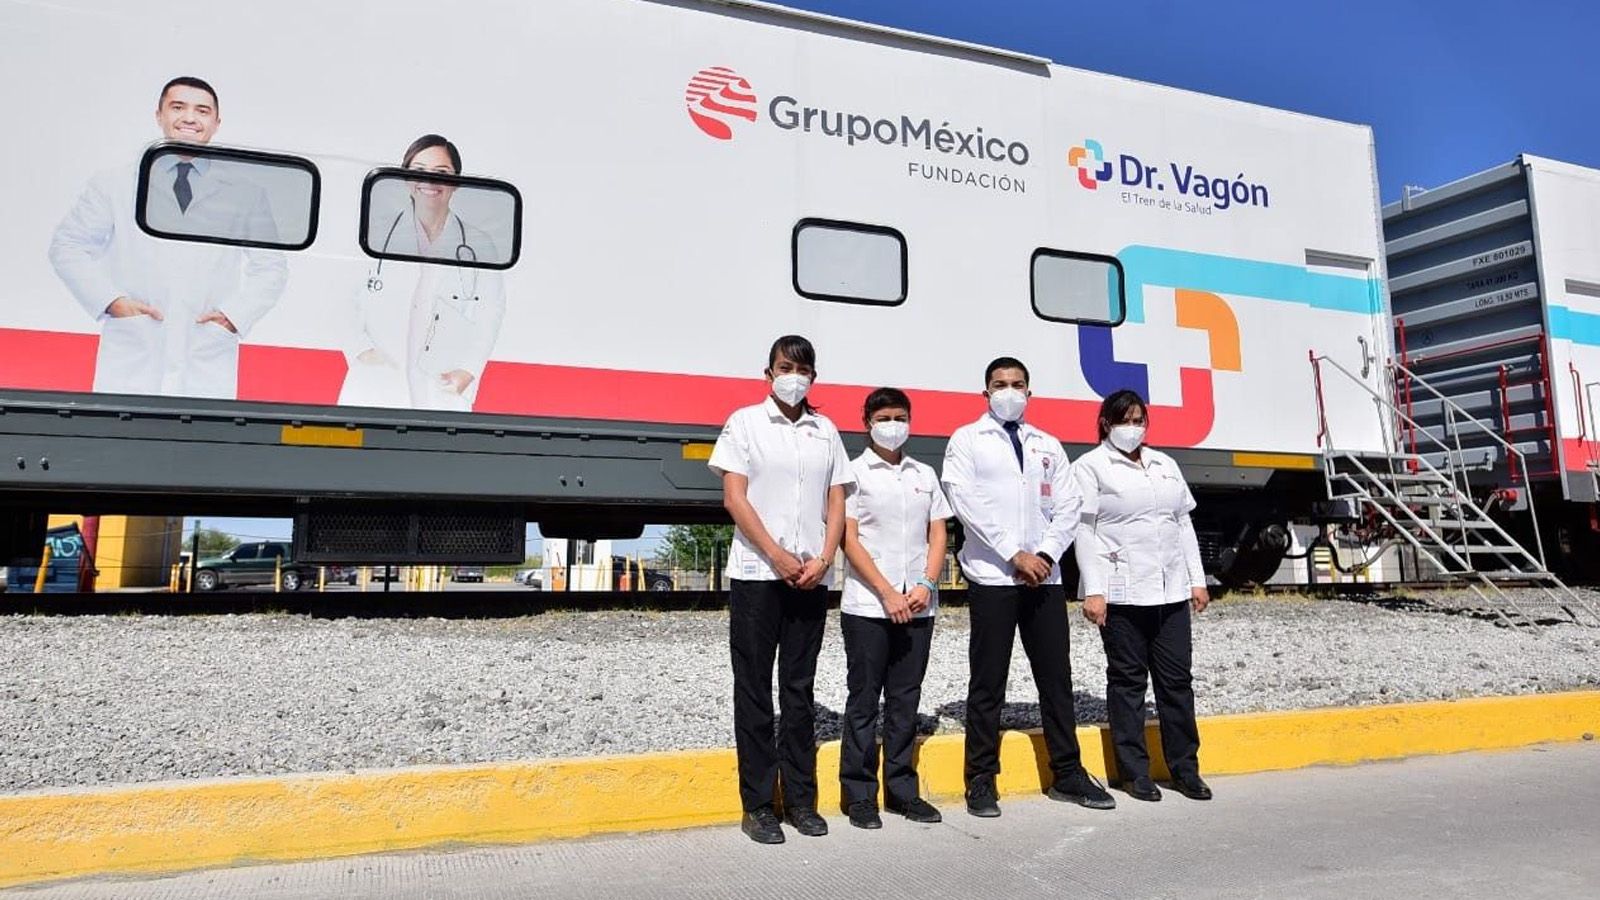 Municipio De Delicias Chih Anuncian Rutas De Camiones Para Visitar Al Dr VagÓn 9314